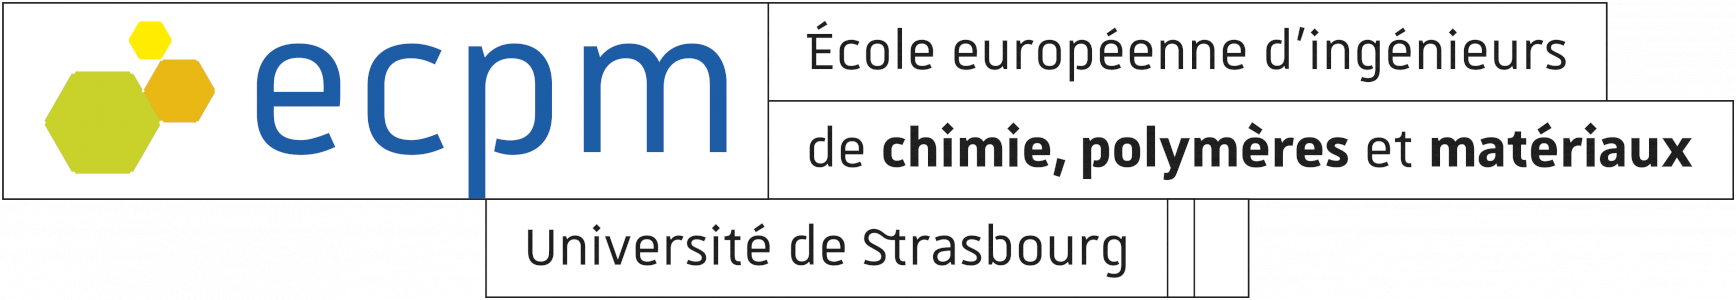 ECPM-ECOLE EUROPEENNE D'INGENIEURS DE CHIMIE, POLYMERES ET MATERIAUX (ECPM) - XploreBIO